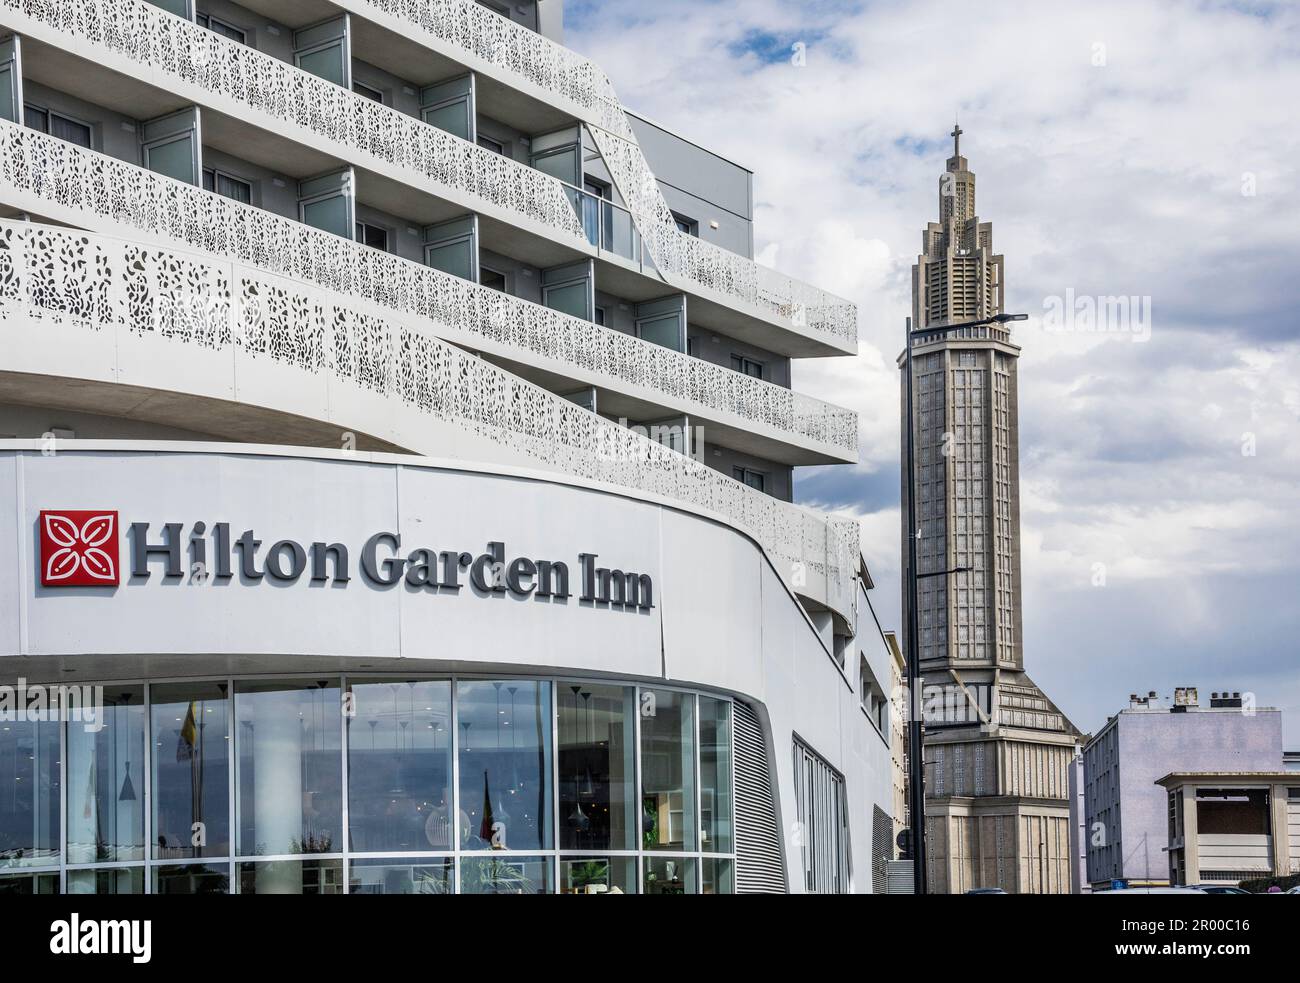 La façade du Hilton Garden Inn avec la toile de fond de la tour monumentale en béton de St. Église Joseph, le Havre, Seine-Maritime, Normandie, Banque D'Images